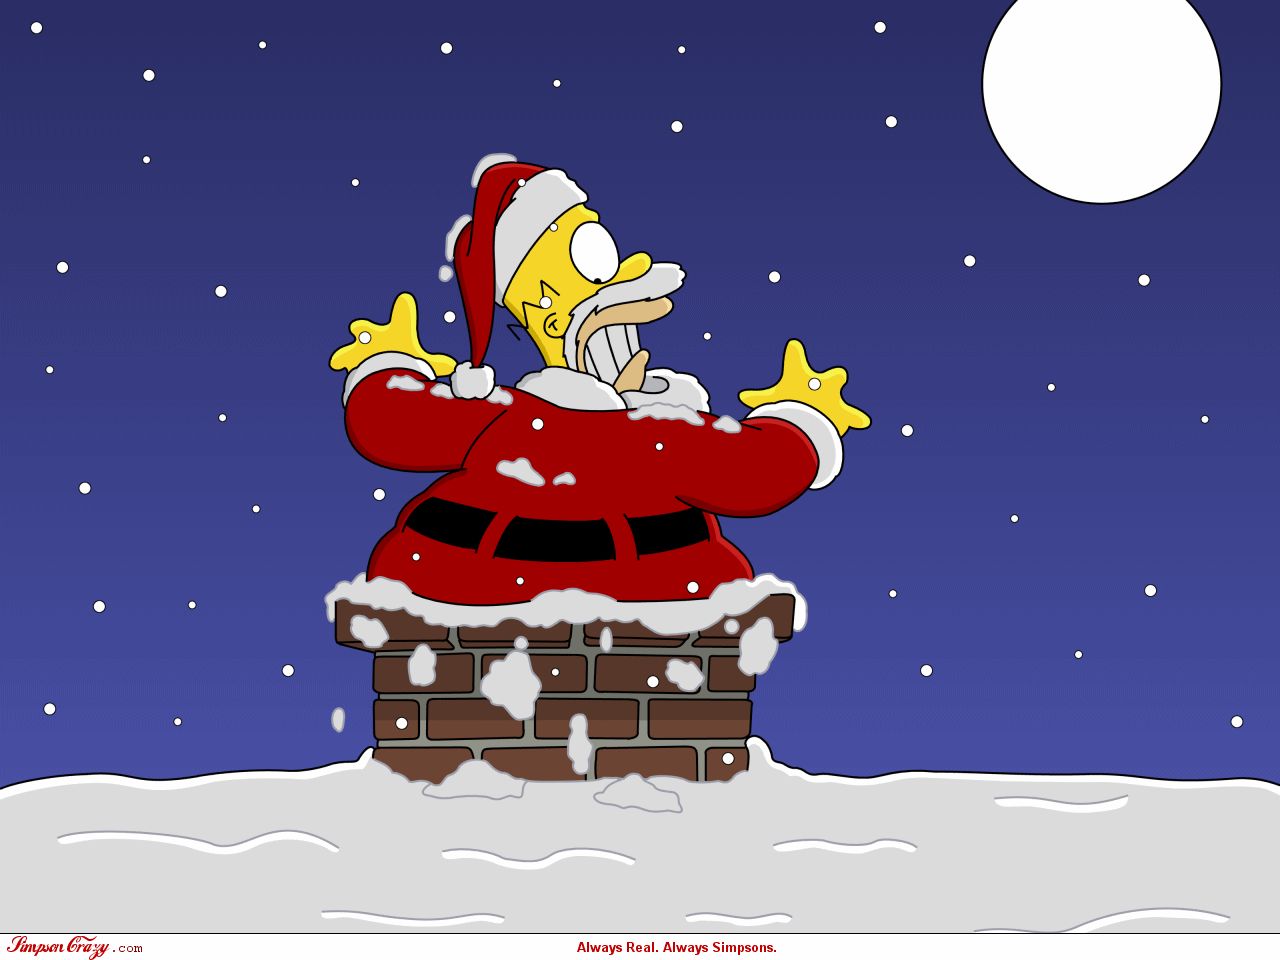 Скачать картинку Рождество, Телешоу, Симпсоны, Гомер Симпсон в телефон бесплатно.